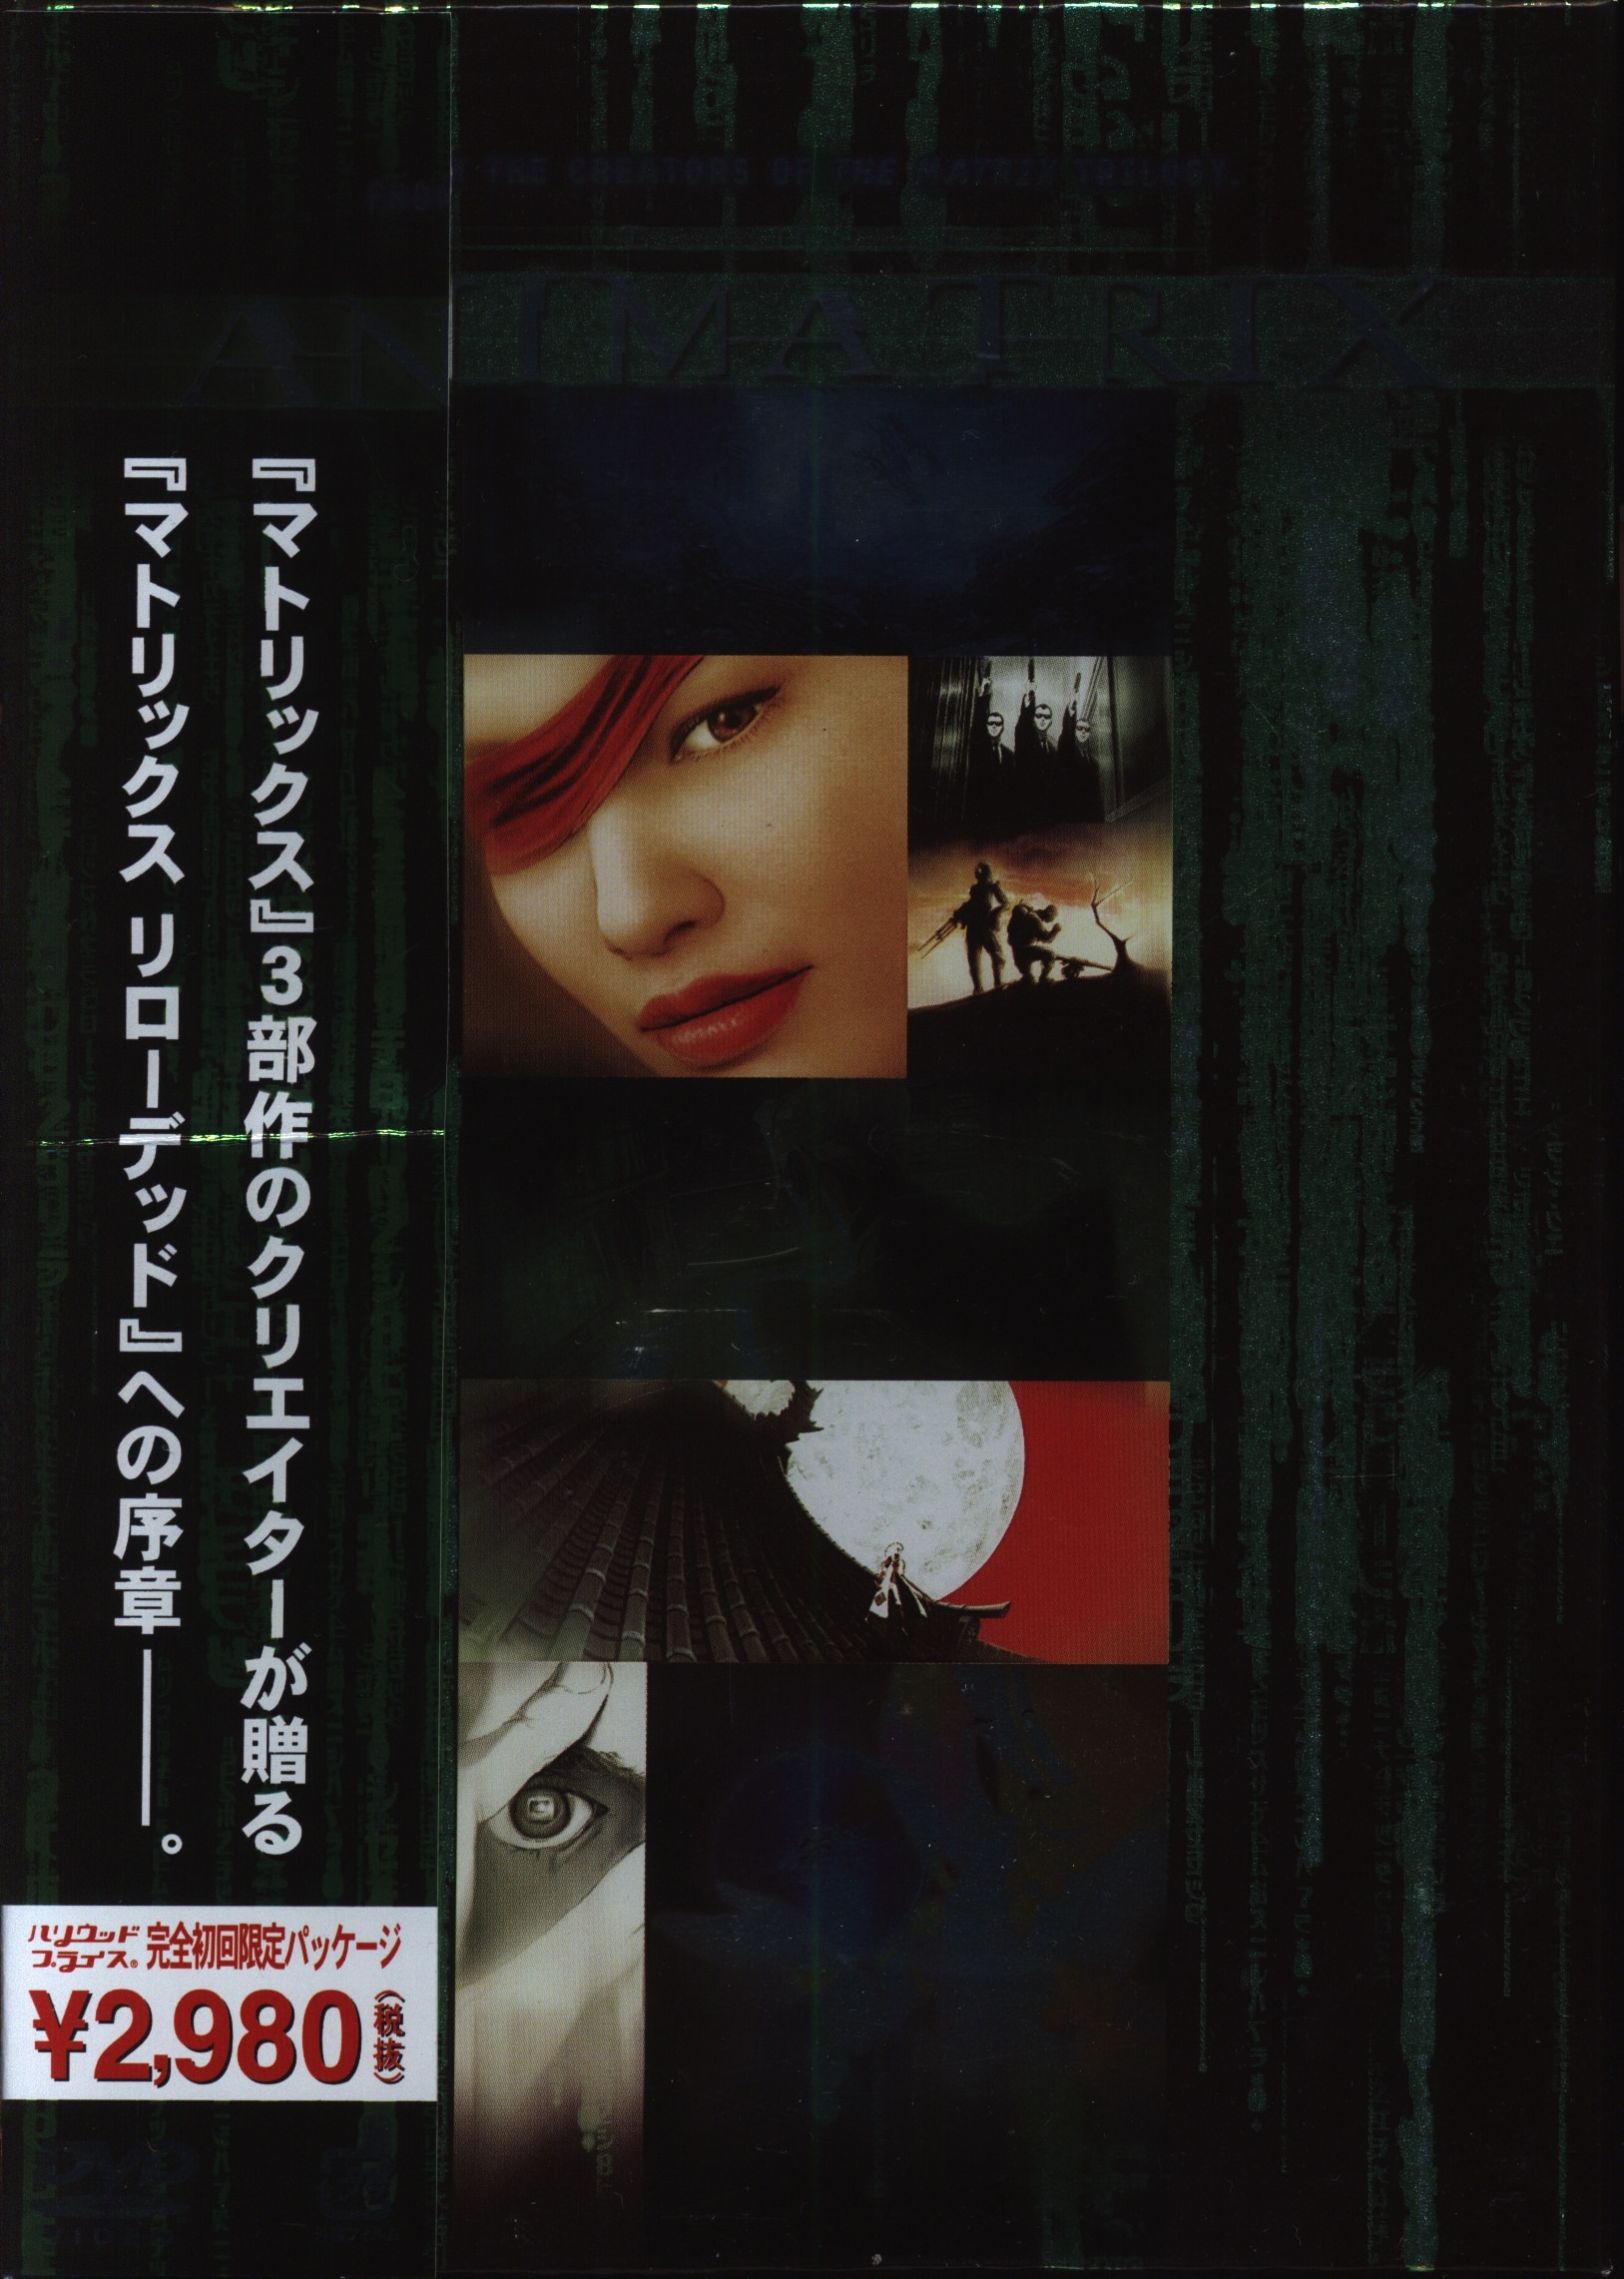 マトリックス トリロジー (4K UHD+BD+特典BD) 日本語収録 海外盤 - DVD/ブルーレイ